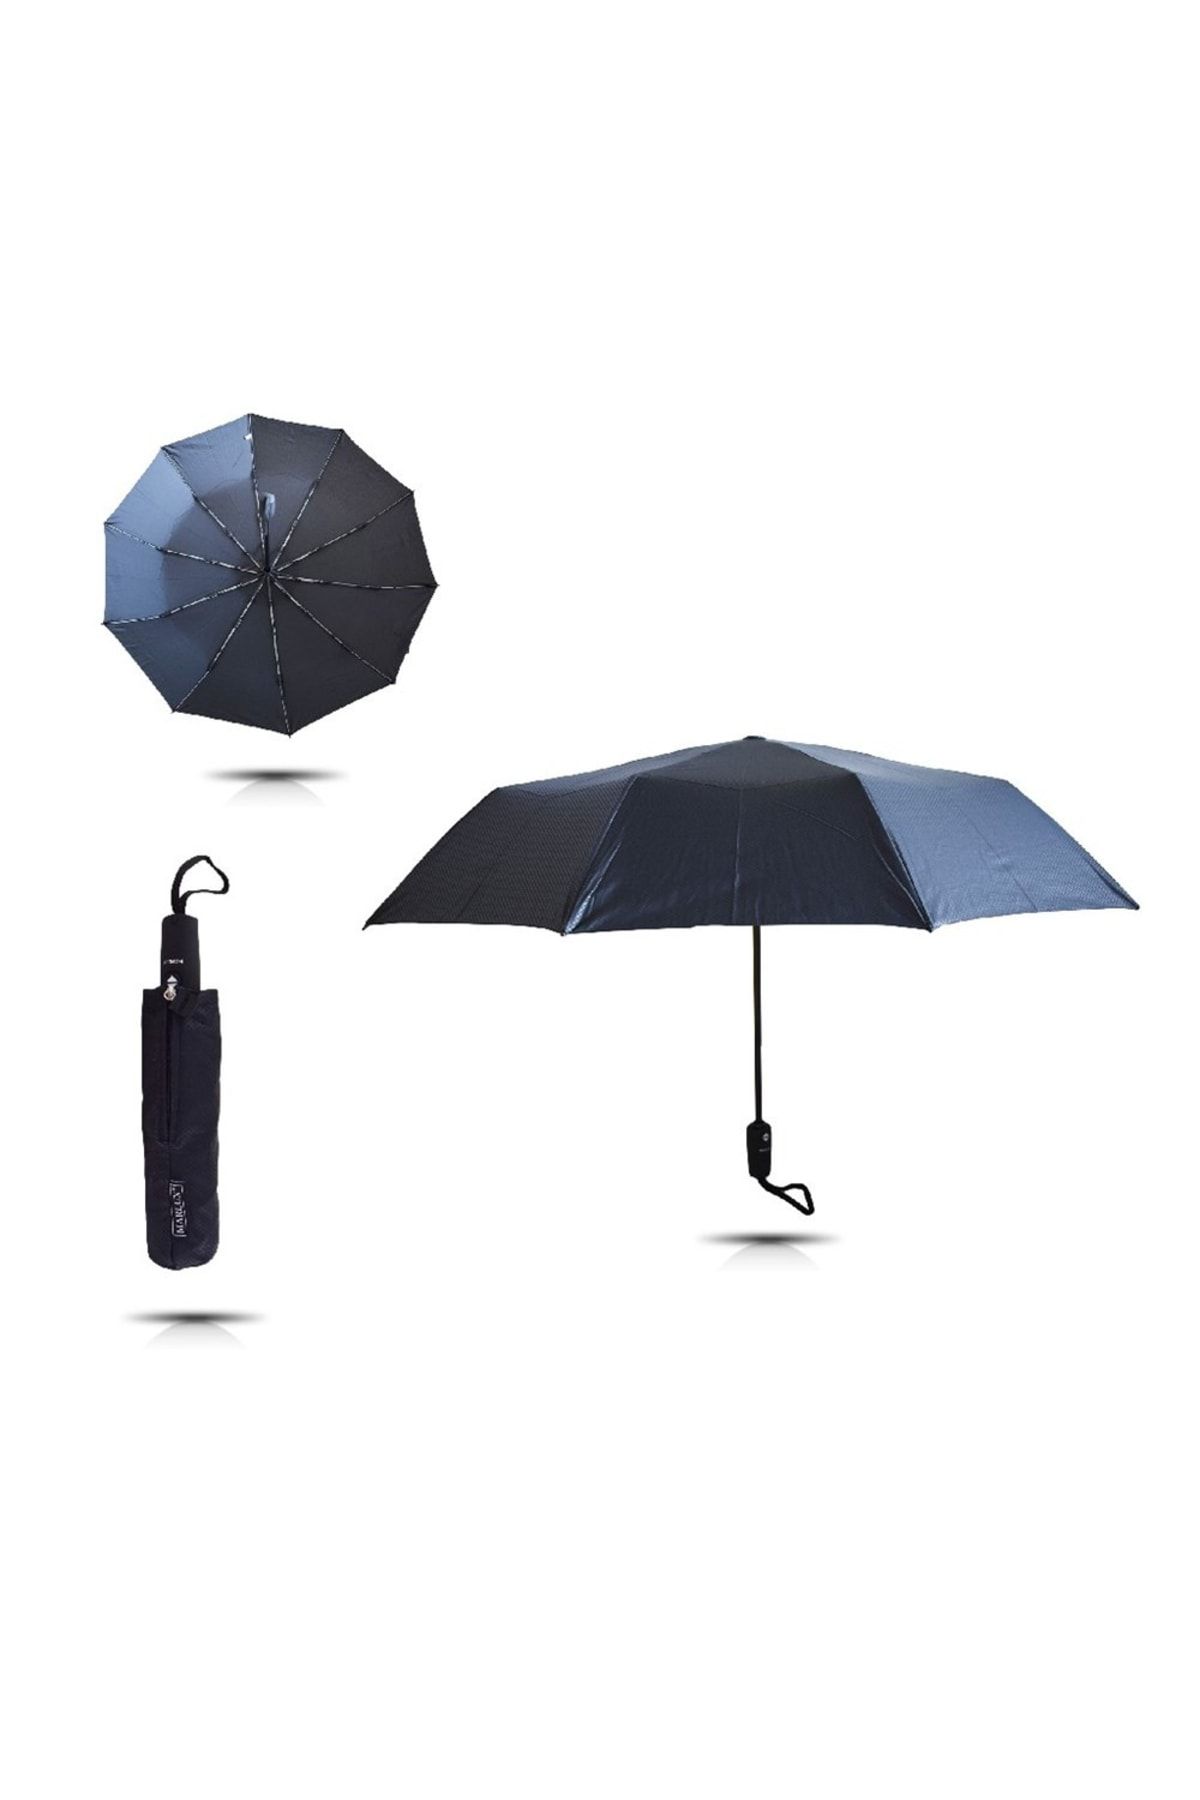 OEM Marlux Tam Otomatik Erkek Şemsiyesi Otomatik Şemsiye Yağmurluk